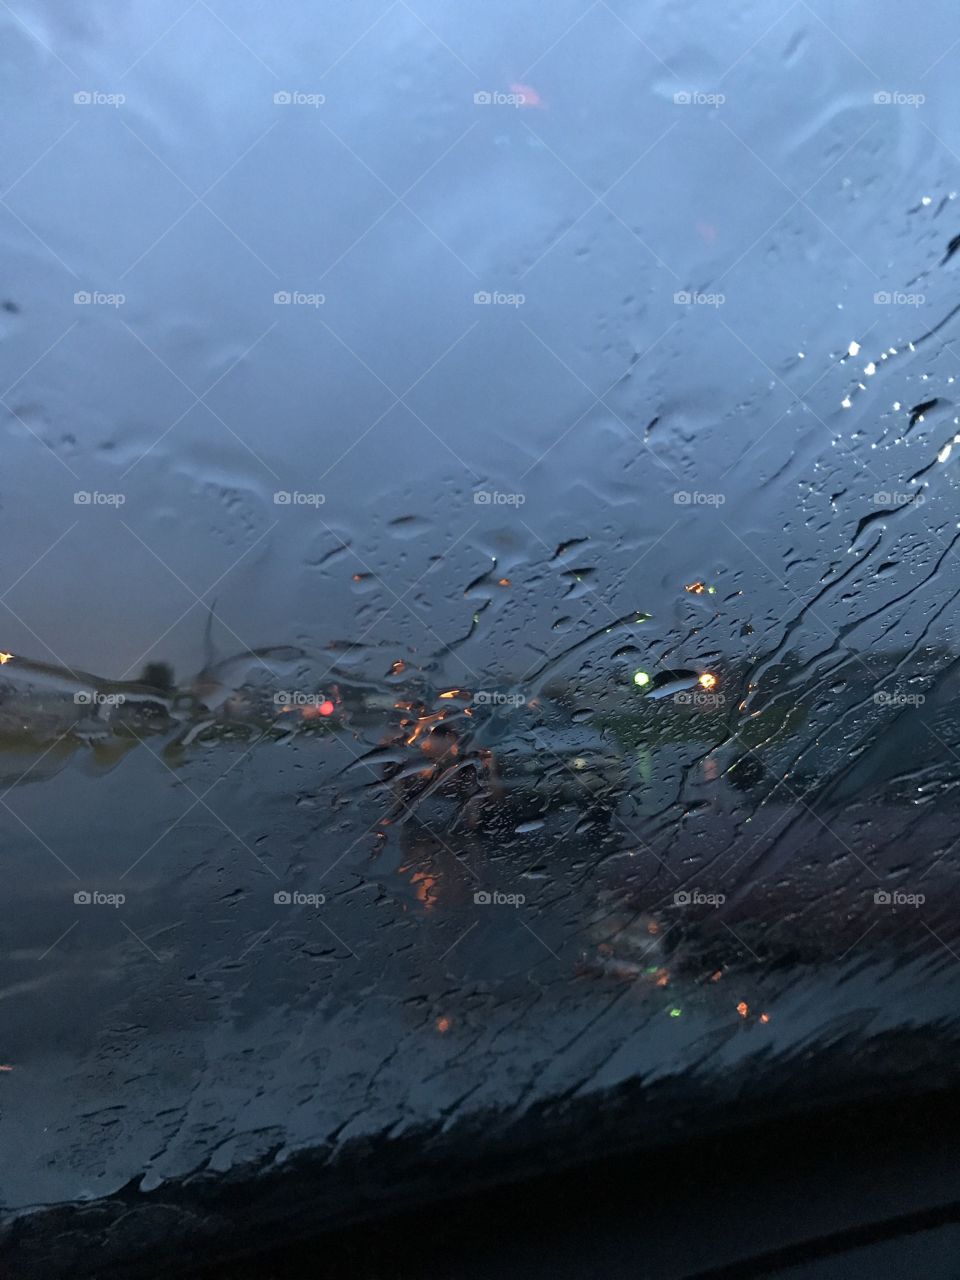 Rainy window view